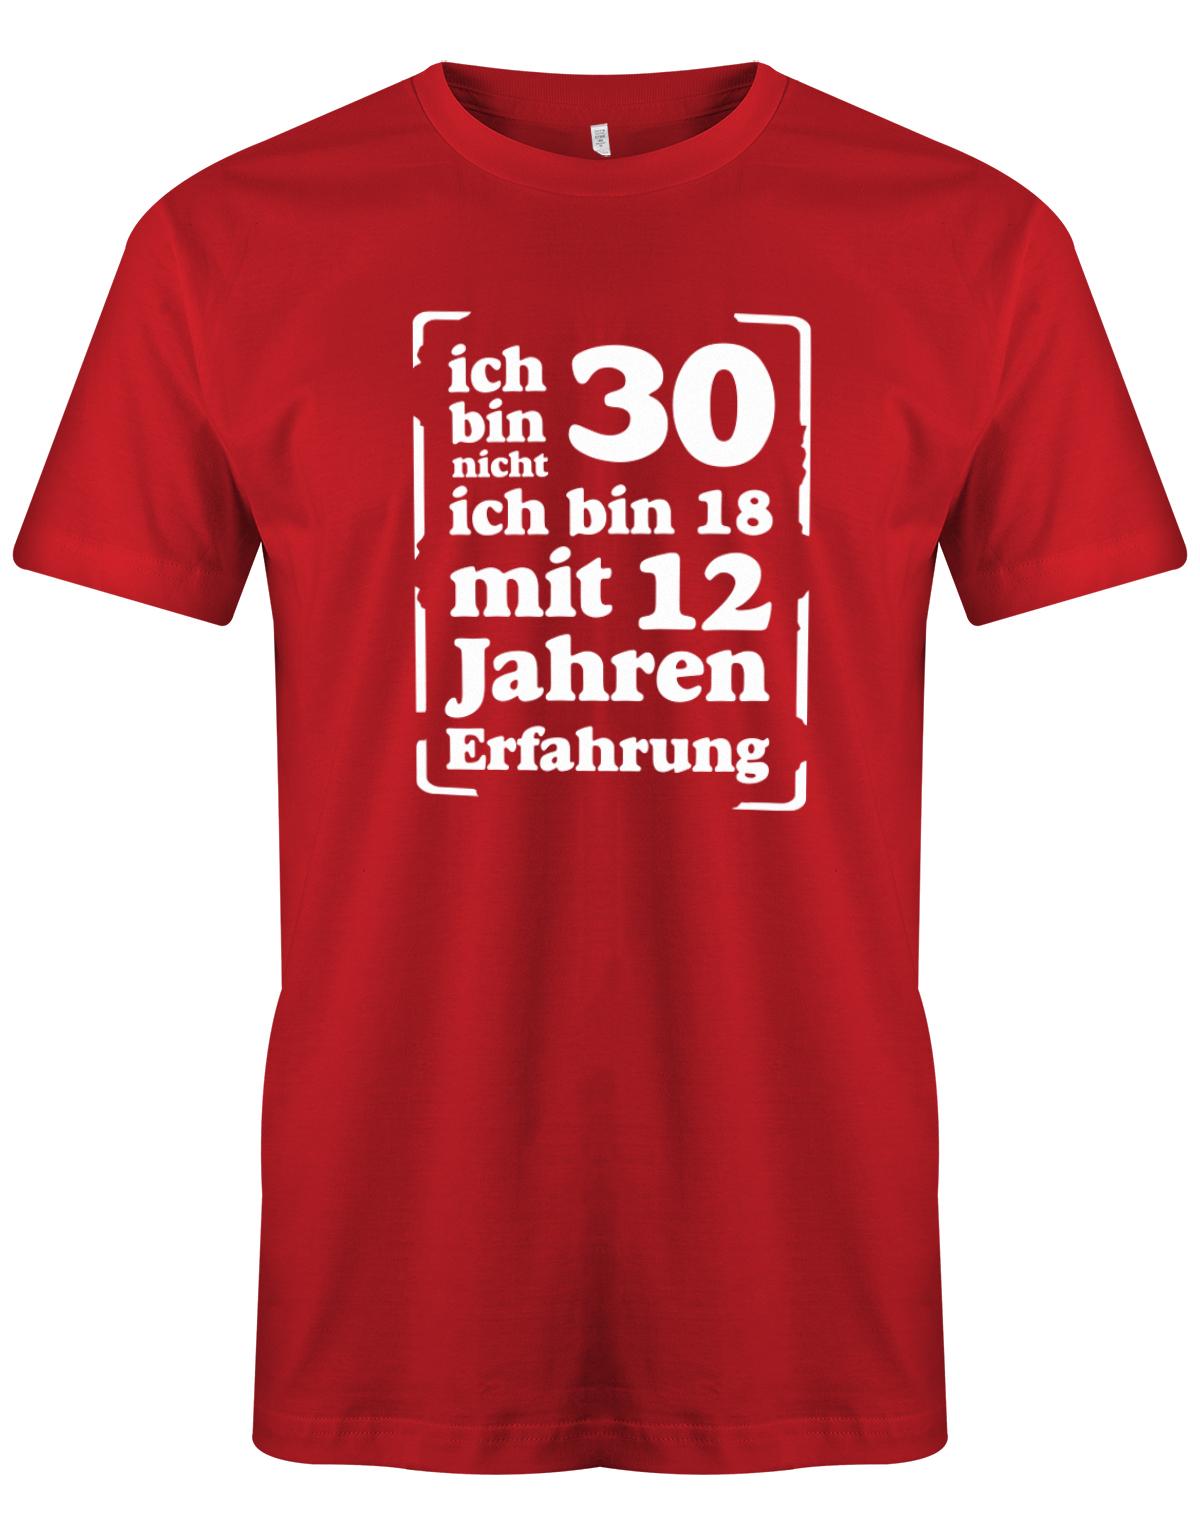 Lustiges T-Shirt zum 30 Geburtstag für den Mann Bedruckt mit: Ich bin nicht 30 ich bin 18 mit 12 Jahren Erfahrung Das 30 Geburtstag Männer Shirt Lustig ist eine super Geschenkidee für alle 30 Jährigen. 30 geburtstag Männer Shirt ✓ 1993 geburtstag shirt ✓ t-shirt zum 30 geburtstag mann ✓ shirt 30 mann Rot